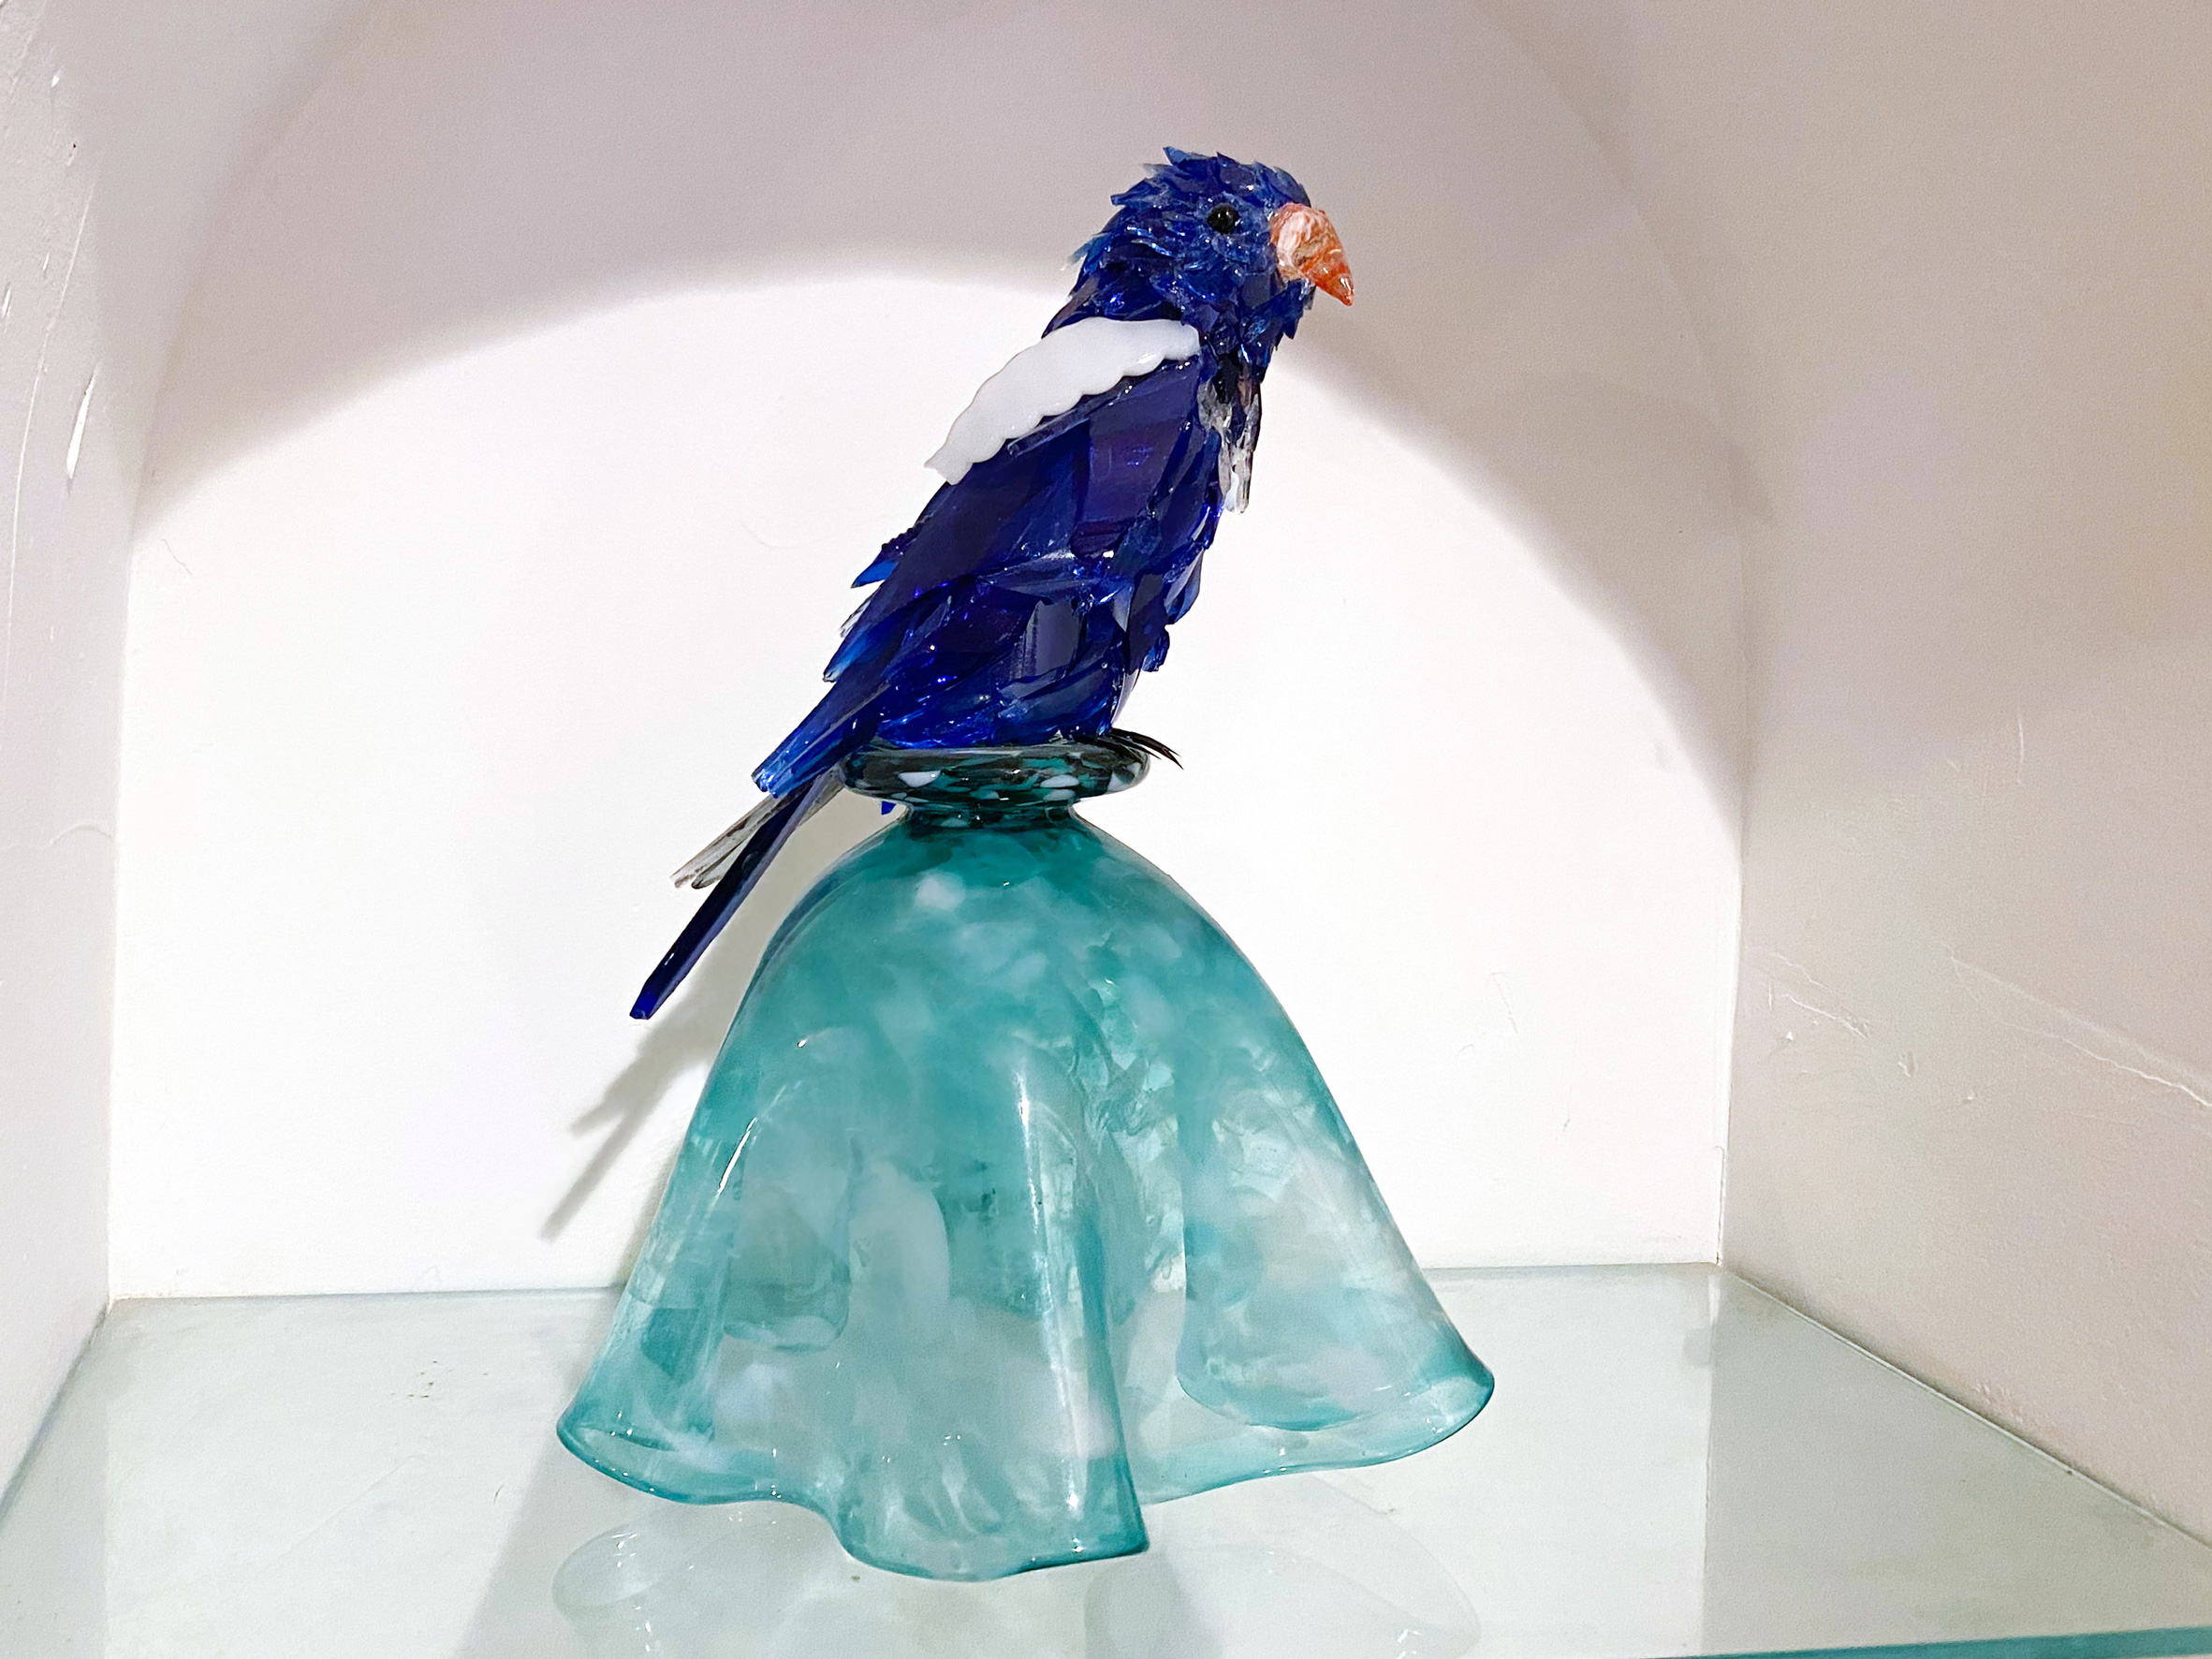 Azul Dark blue bird glass sculpture